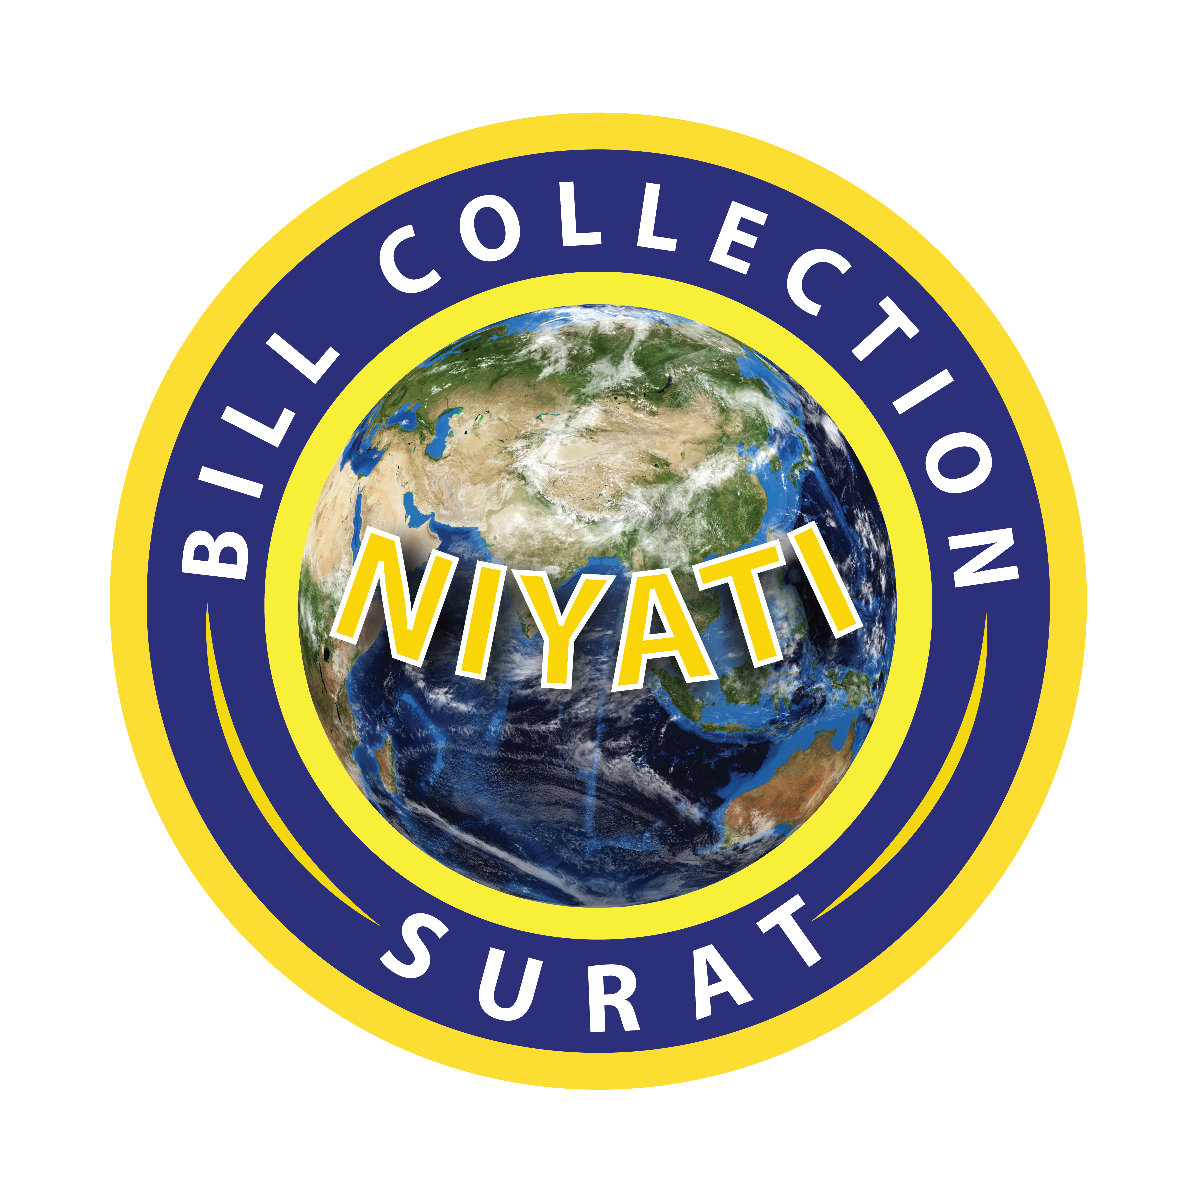 Niyati Bill Collection